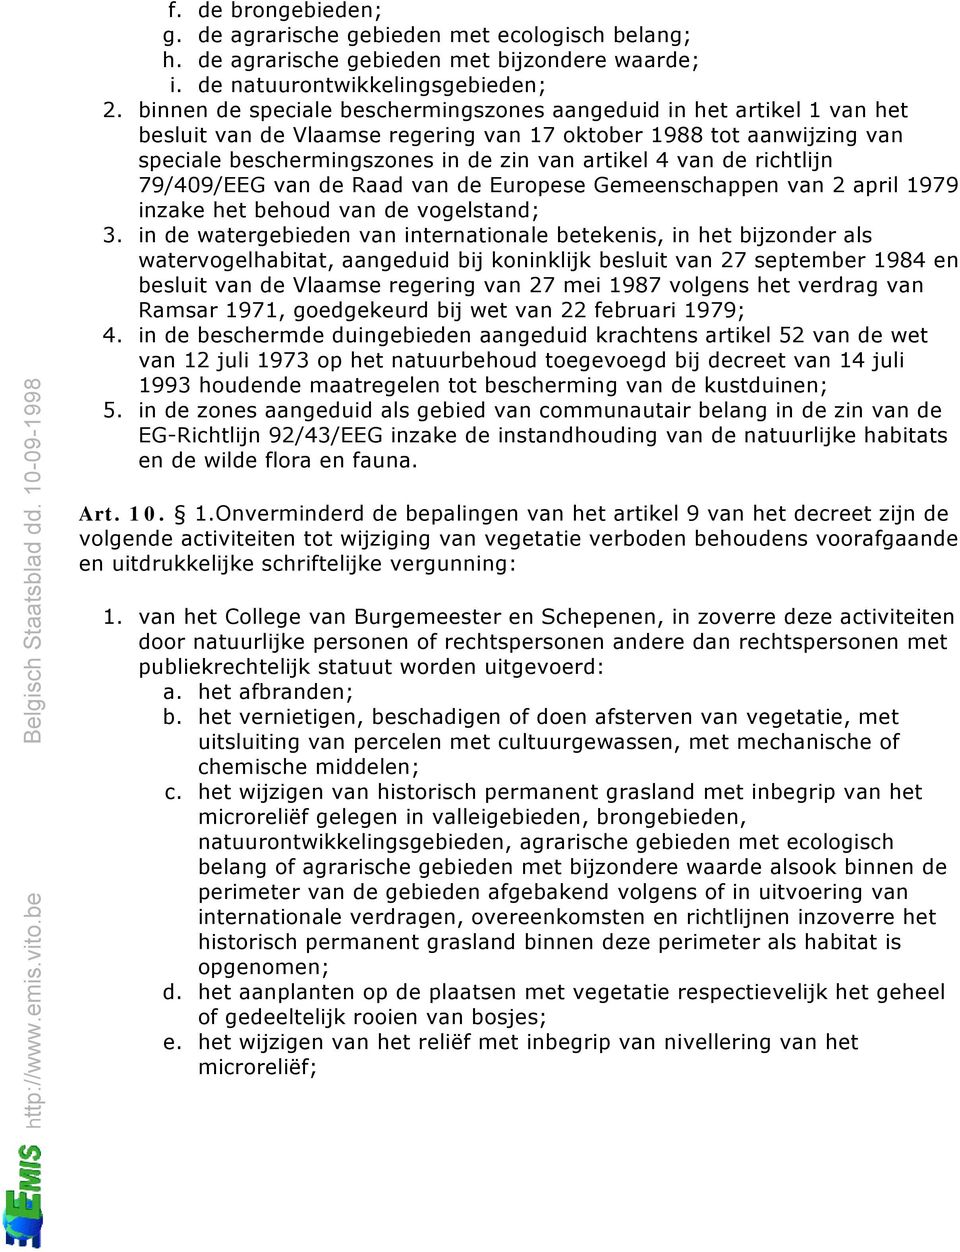 de richtlijn 79/409/EEG van de Raad van de Europese Gemeenschappen van 2 april 1979 inzake het behoud van de vogelstand; 3.